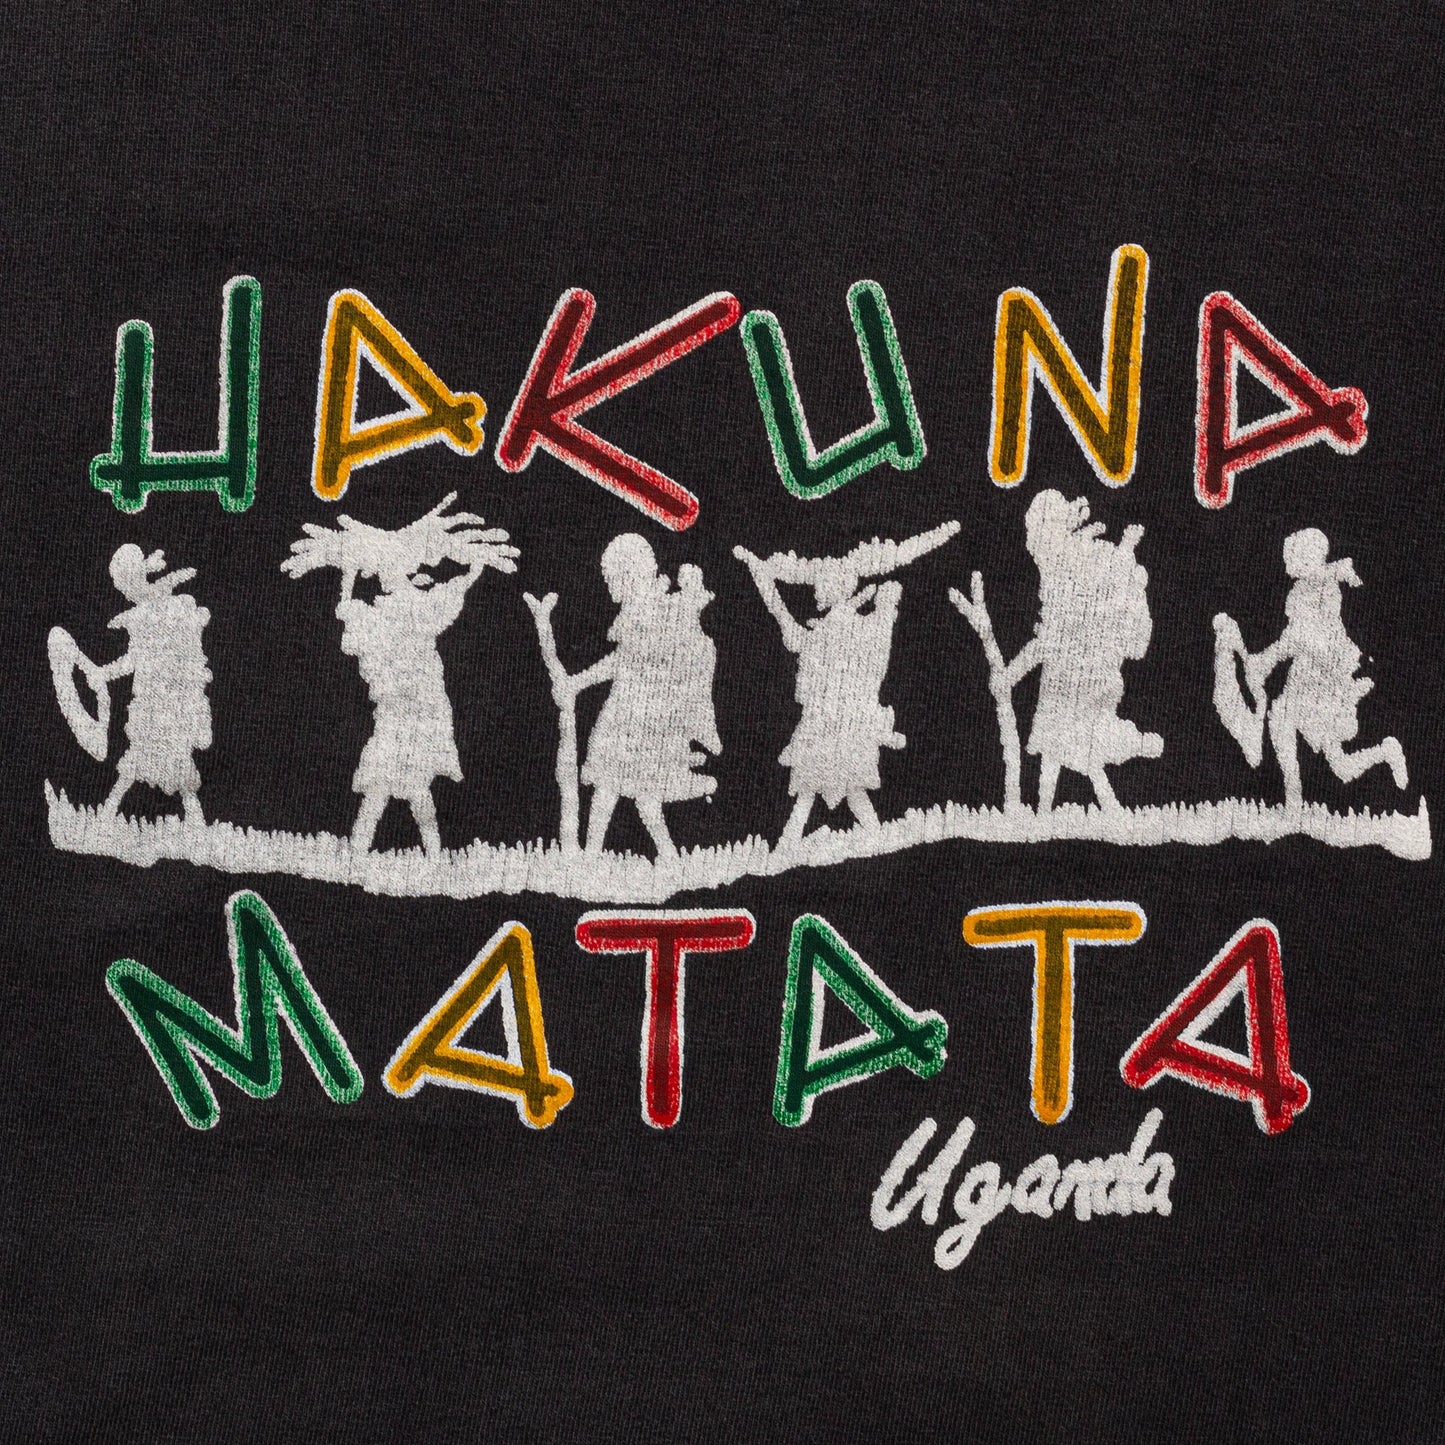 Vintage Hakuna Matata Uganda Shirt - Men's Large, Women's XL 